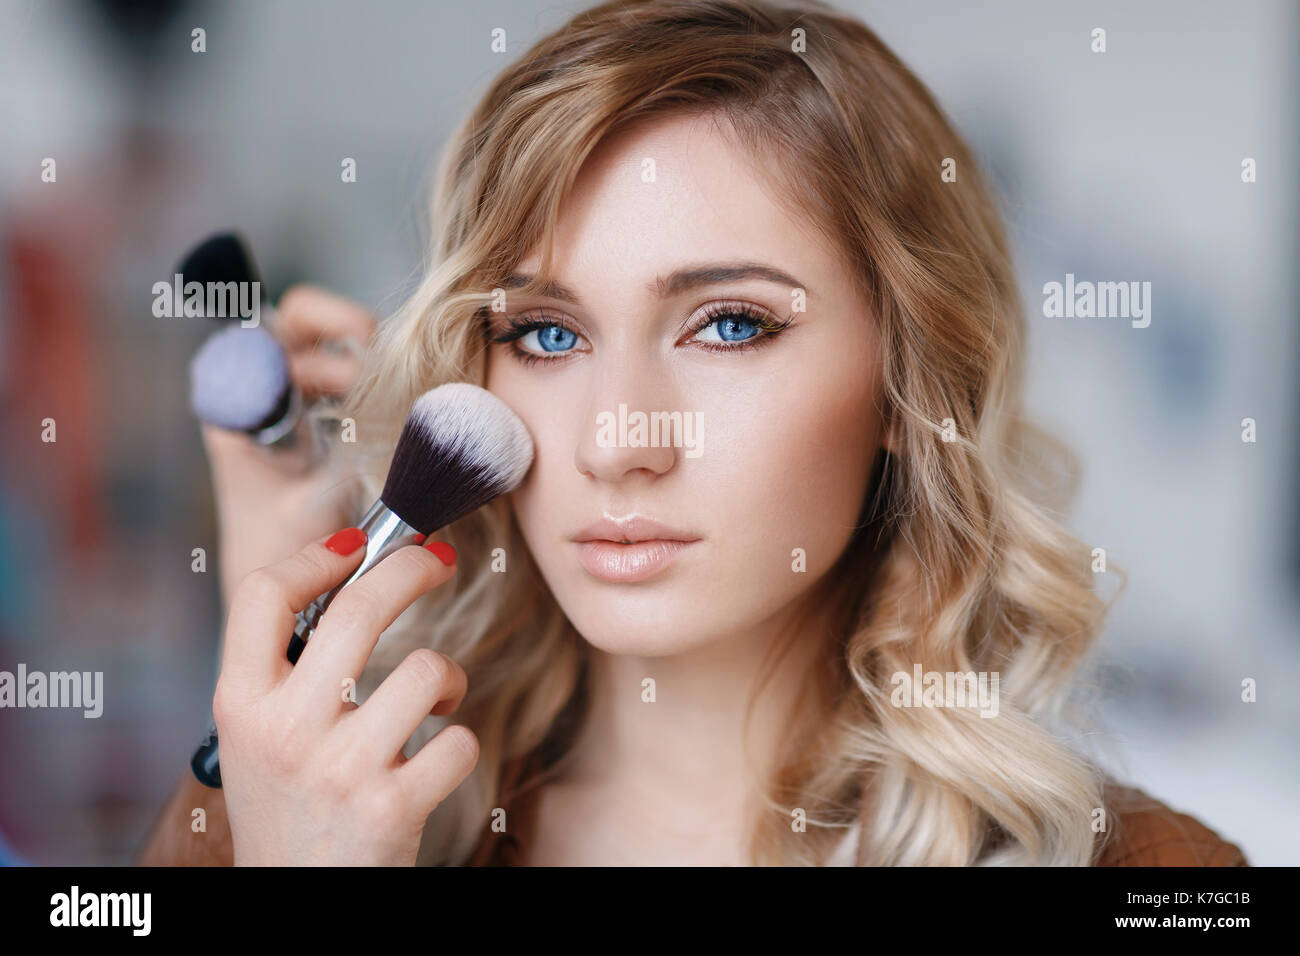 Processo di make-up artist il lavoro con il modello di close-up. bellissima ragazza con gli occhi blu Foto Stock